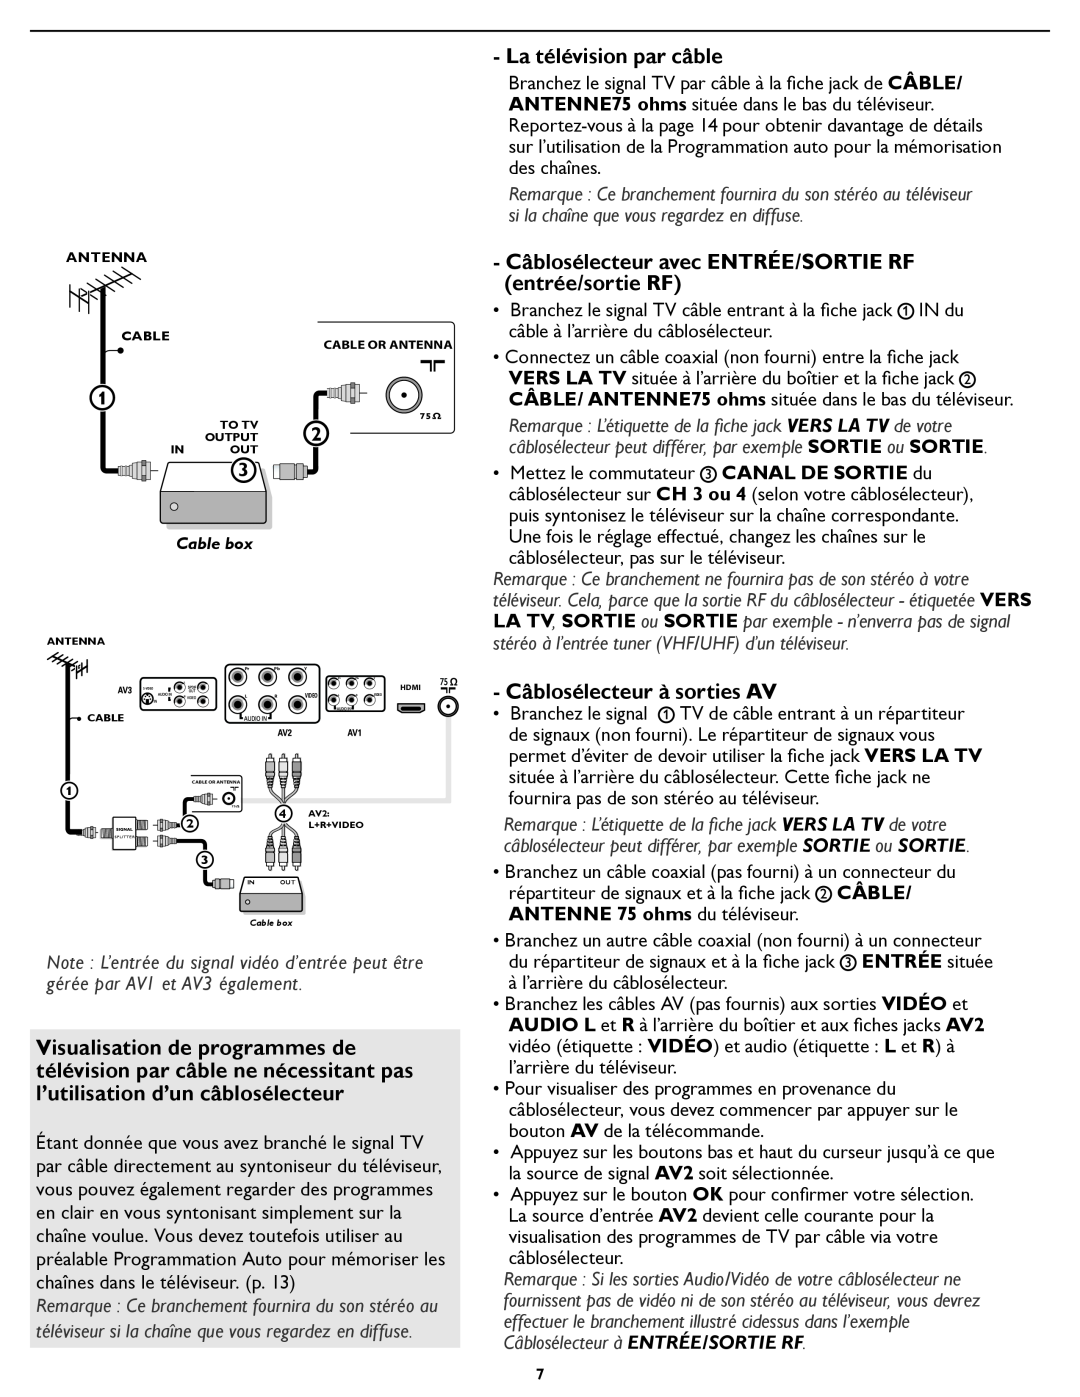 Magnavox 321D La télévision par câble, Câblosélecteur avec ENTRÉE/SORTIE RF entrée/sortie RF, Câblosélecteur à sorties AV 